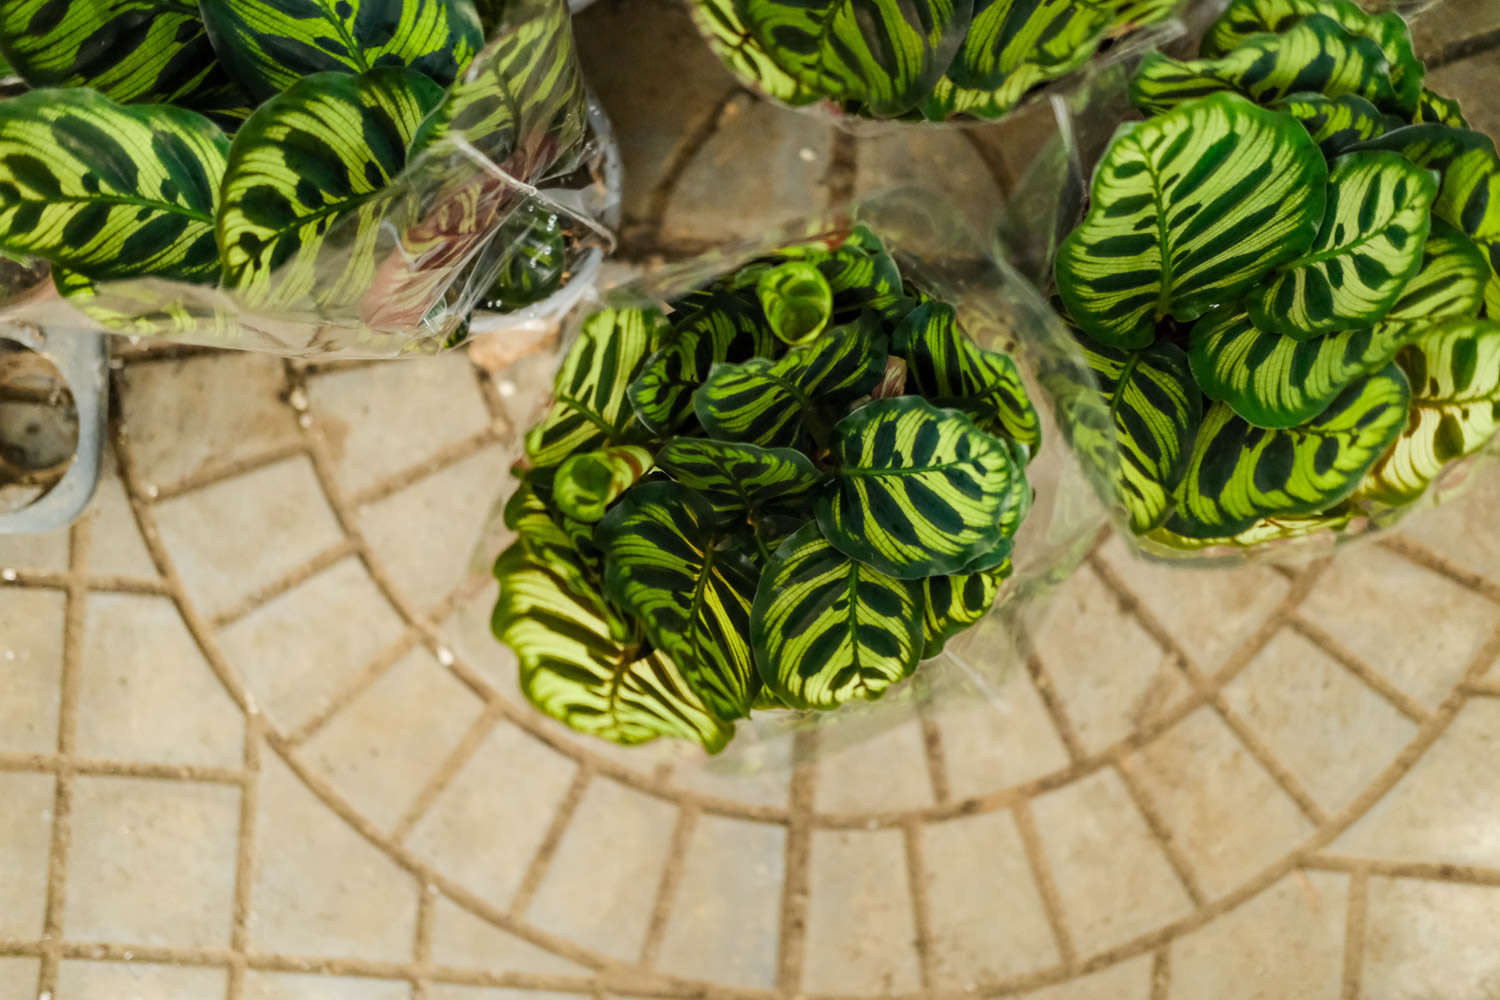 孔雀竹芋的常见品种